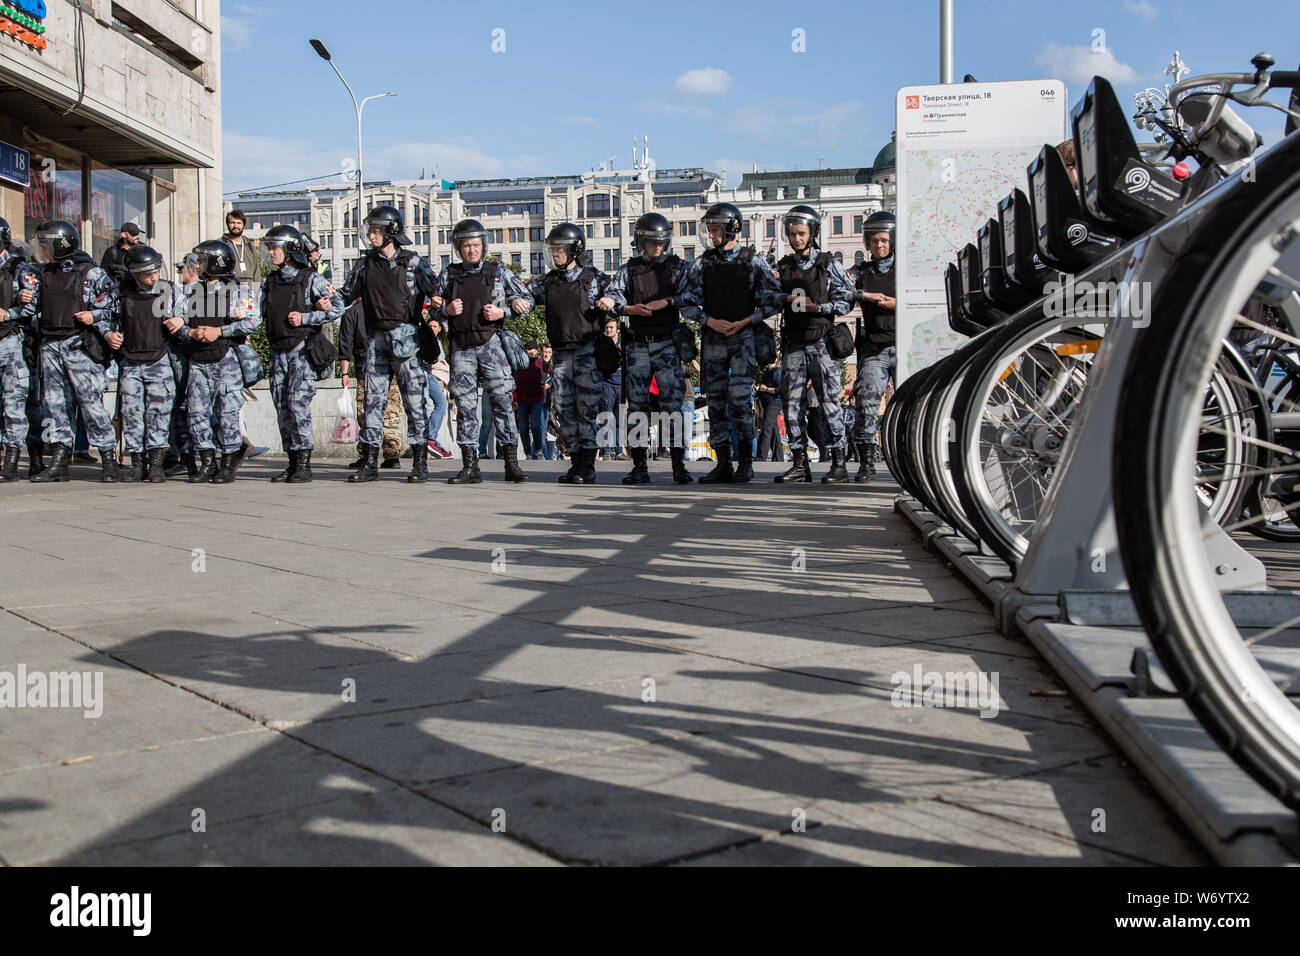 Blocco di polizia una strada durante un rally unsanctioned nel centro di Mosca.di polizia di Mosca trattenuti più di 300 persone che protestavano contro l'esclusione di alcuni indipendenti e candidati dell' opposizione dal consiglio della città di scrutinio il monitoraggio di detto gruppo. Foto Stock